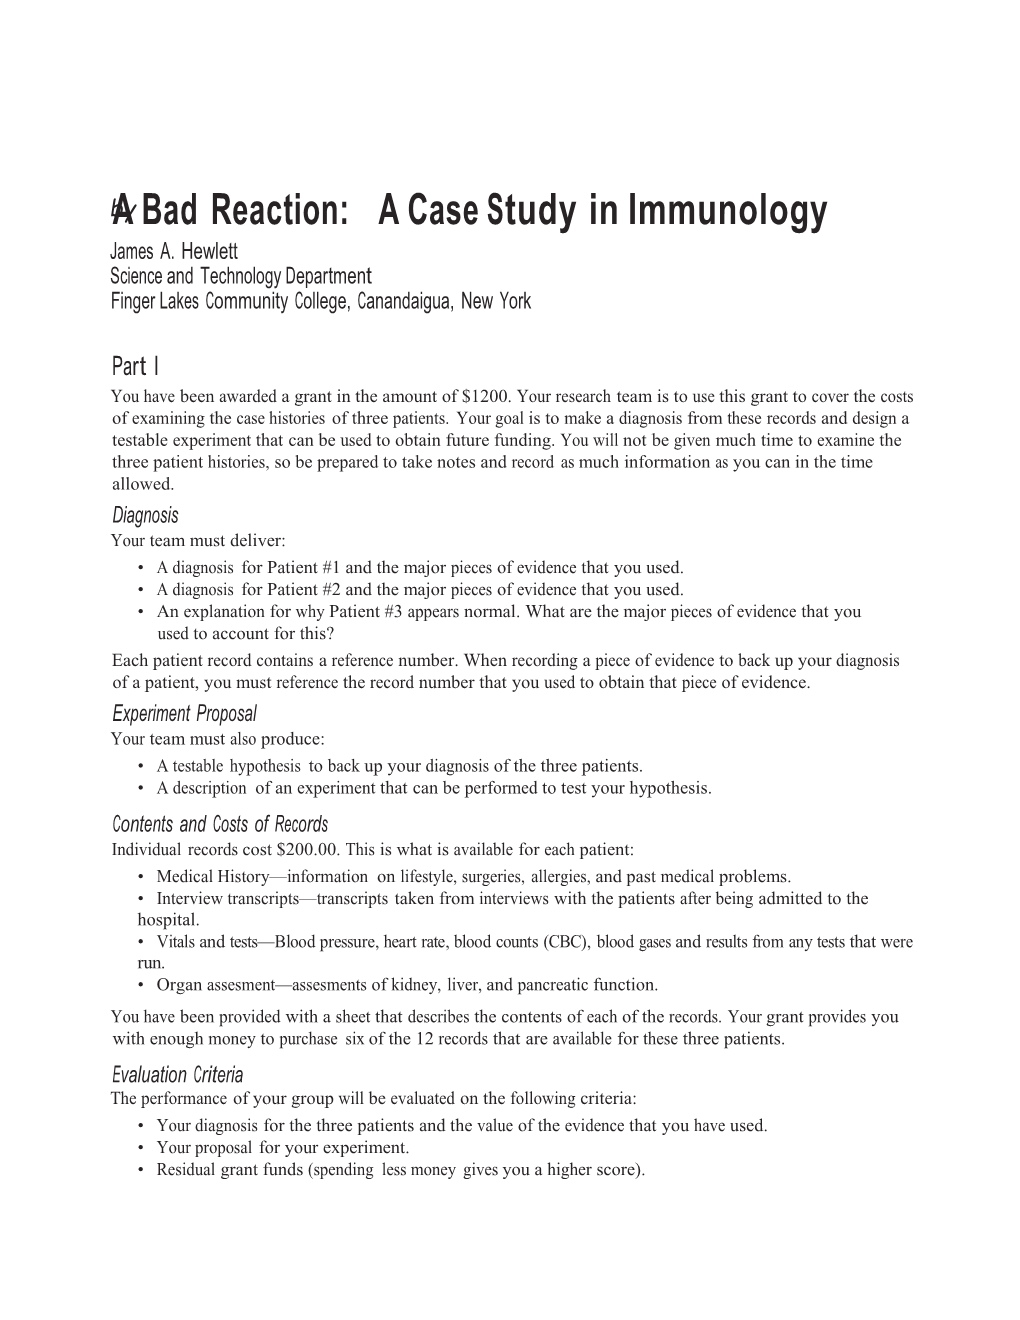 Abadreaction: Acase Studyinimmunology